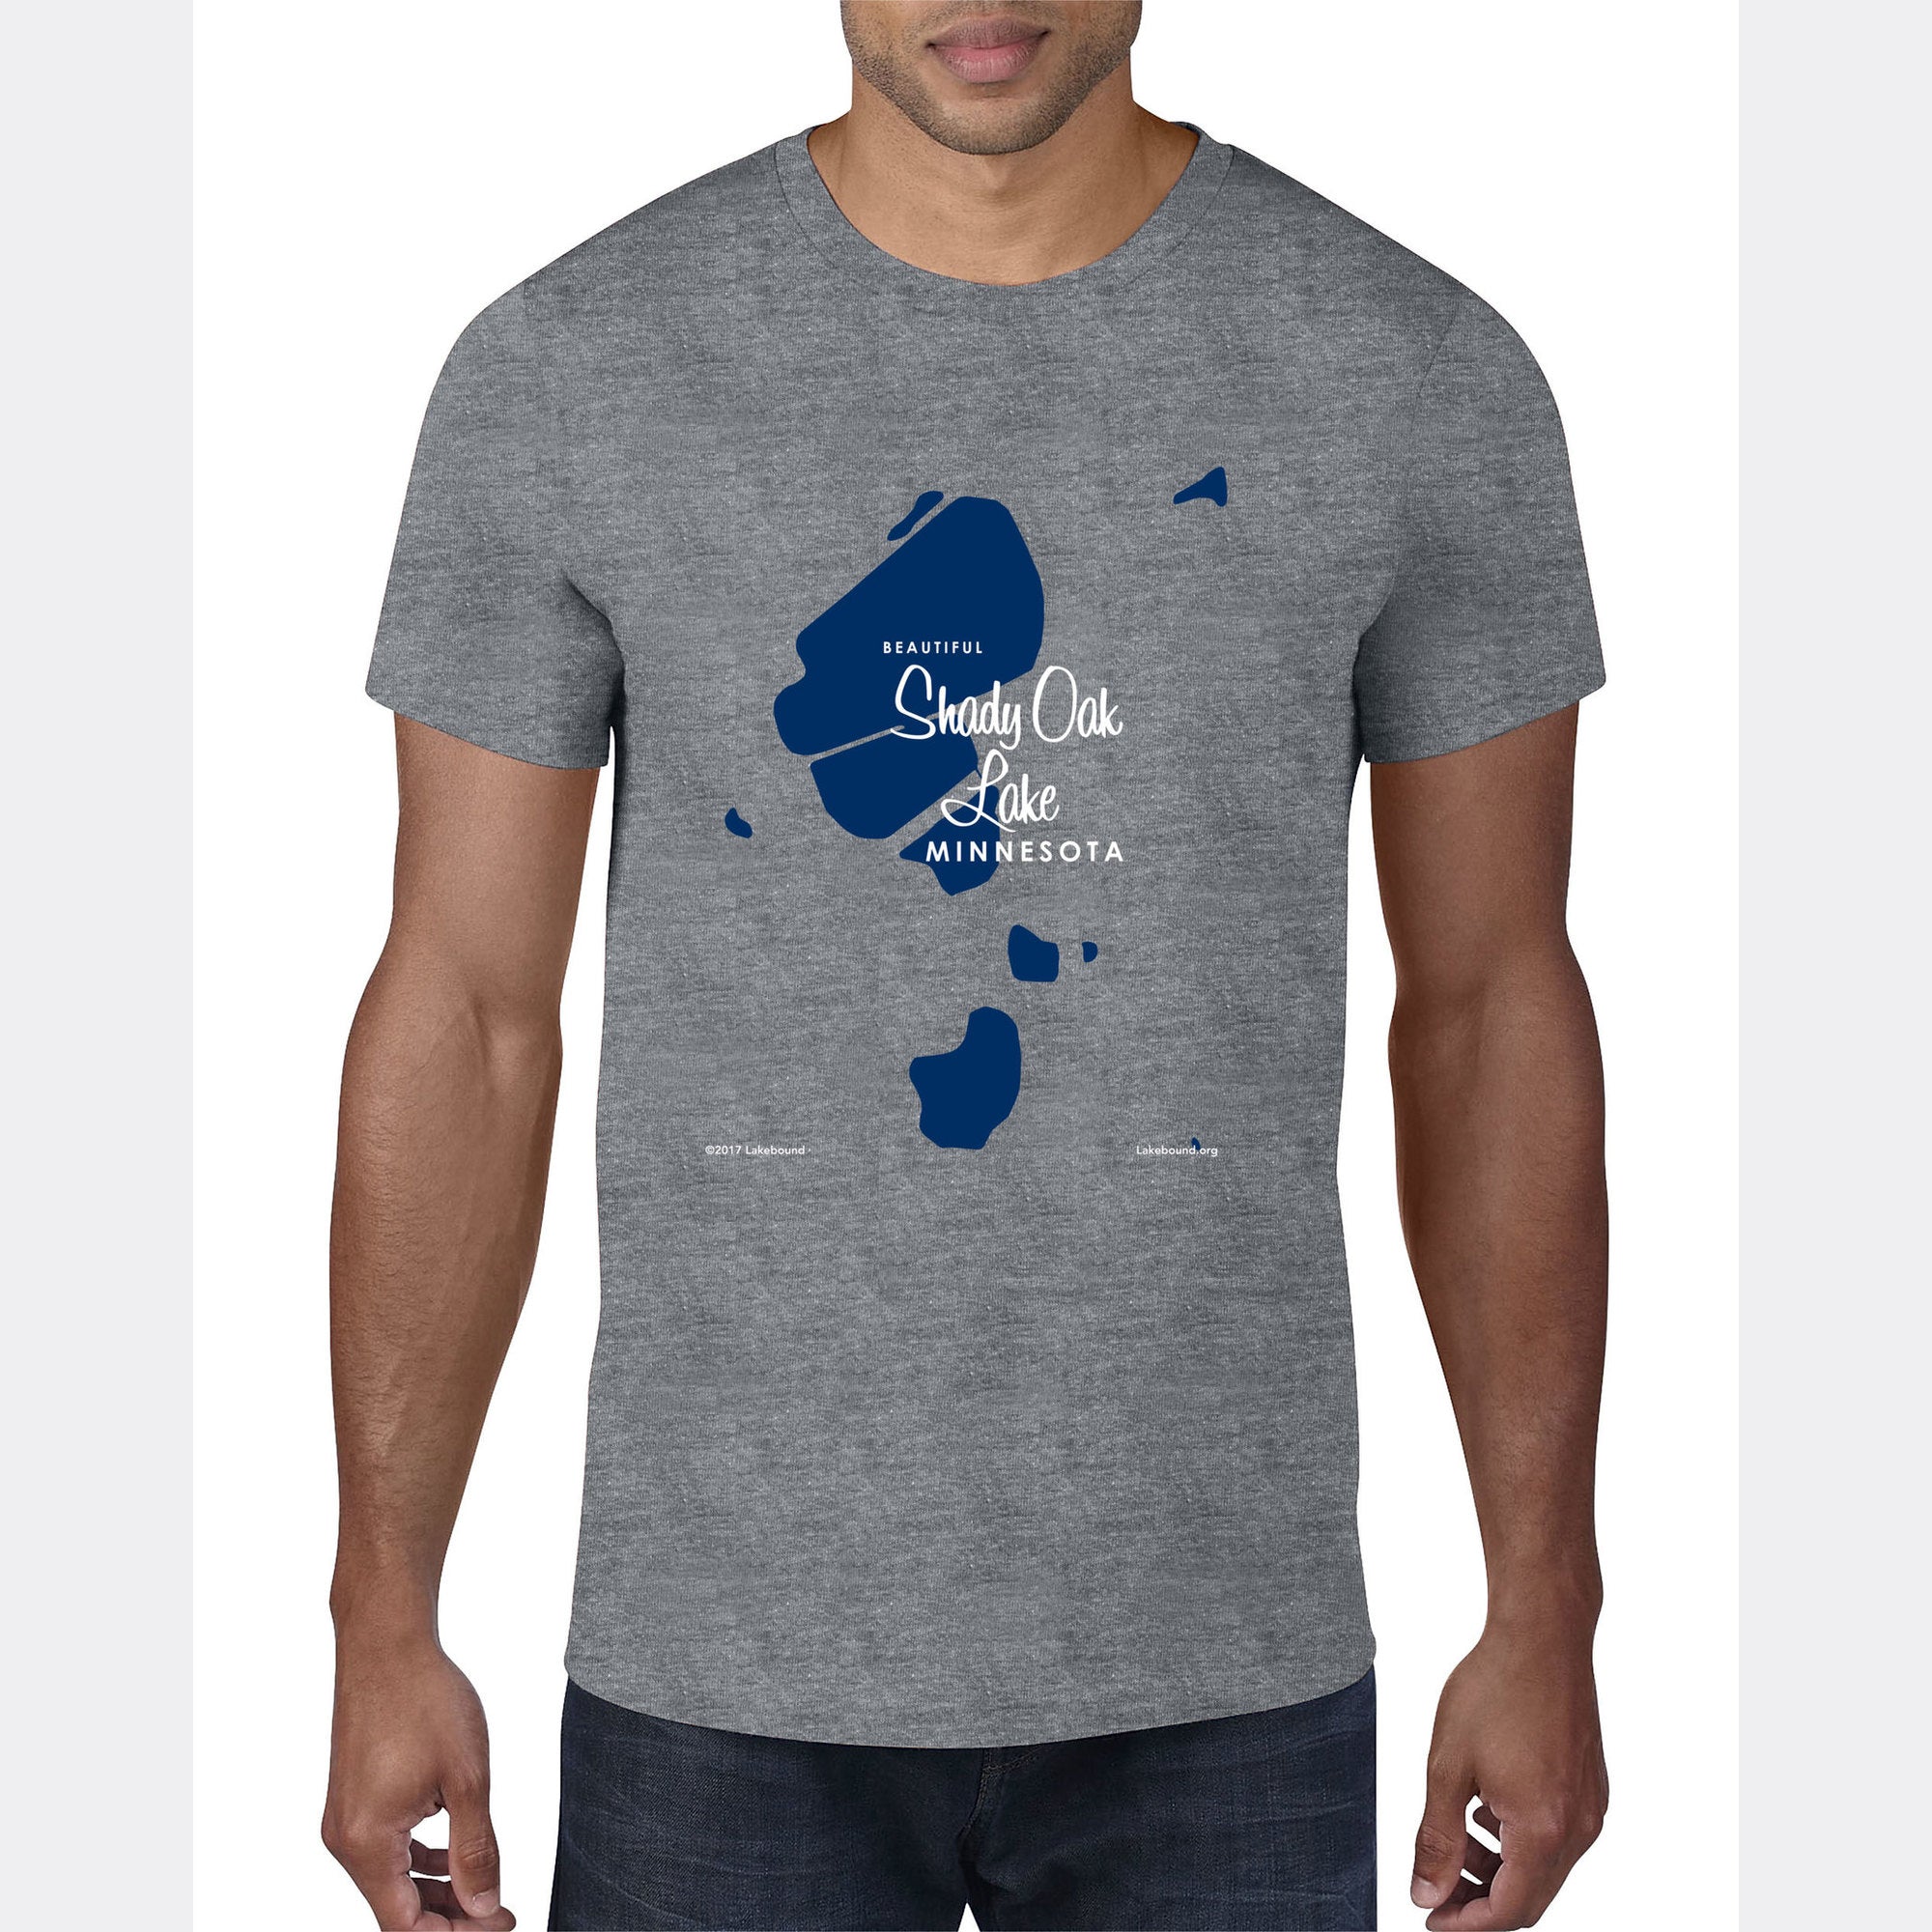 Shady Oak Lake Minnesota, T-Shirt